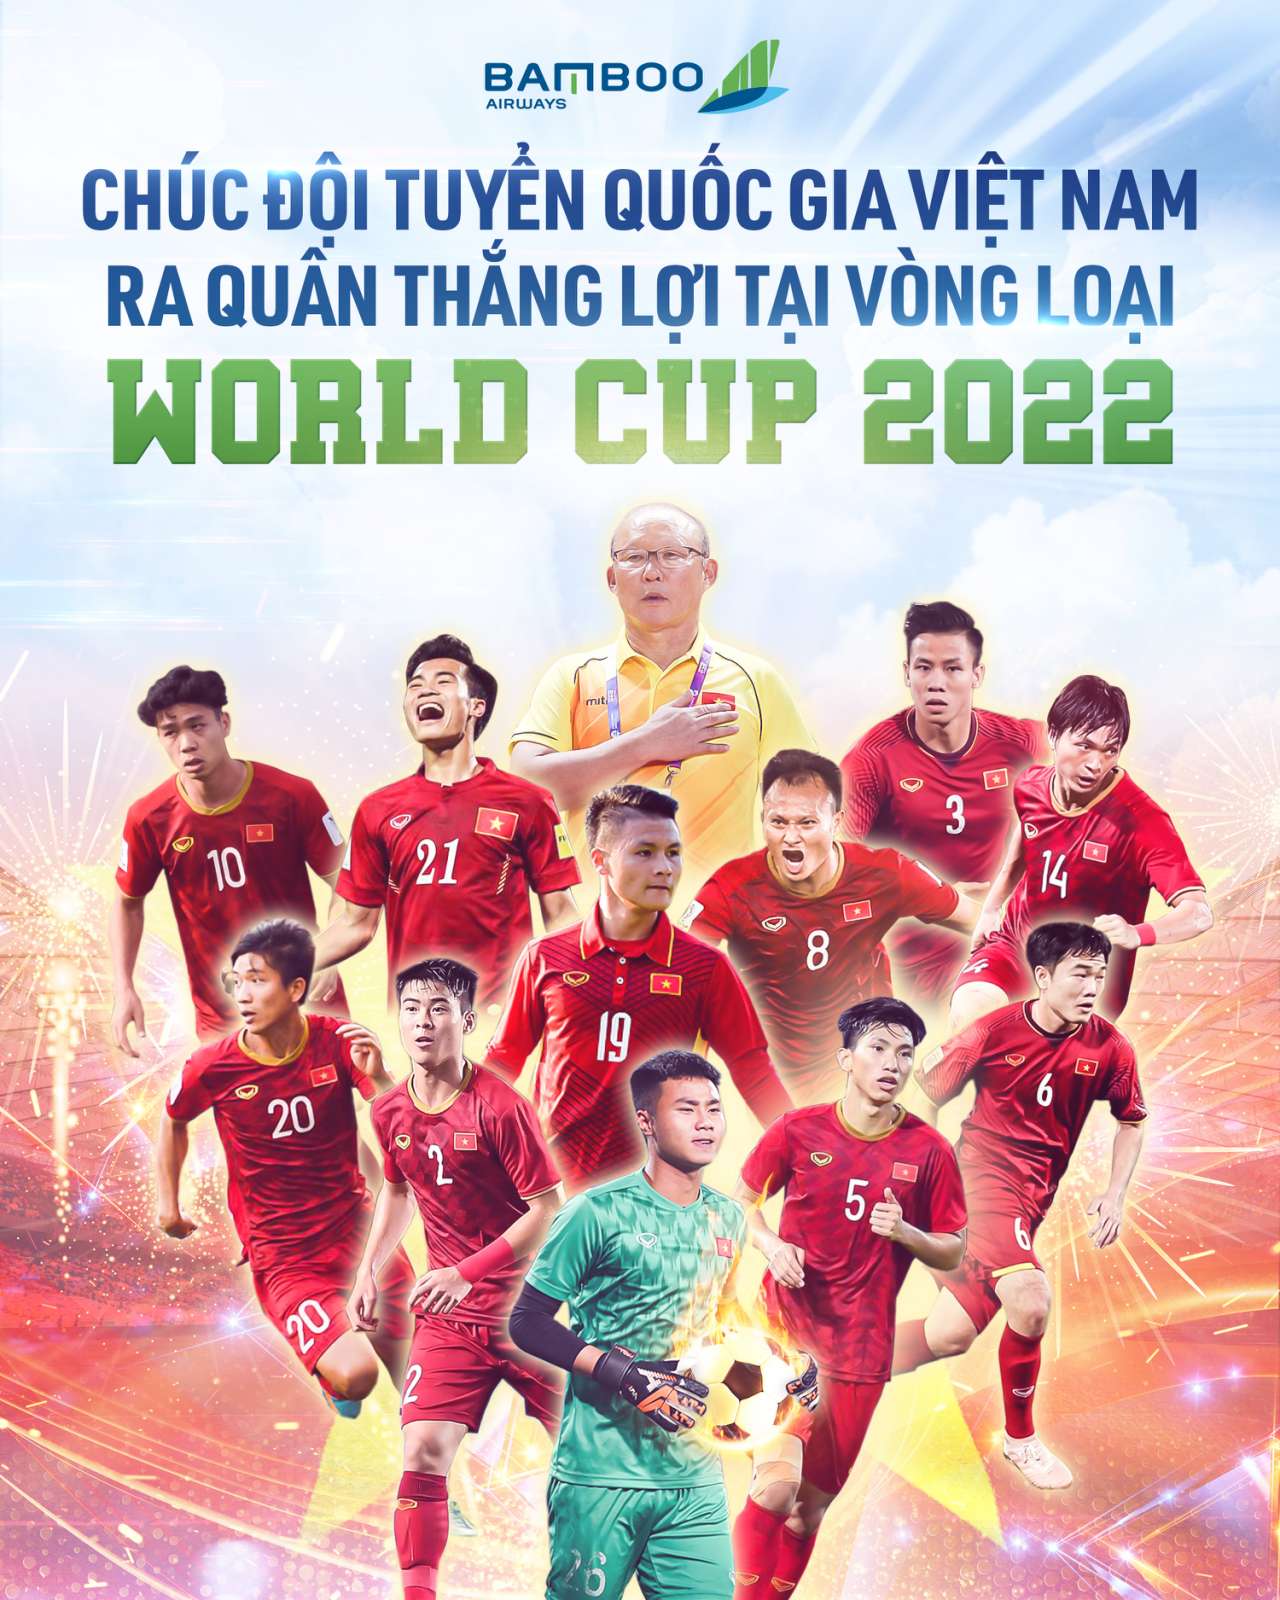 BAMBOO ĐỒNG HÀNH CÙNG ĐỘI TUYỂN VIỆT NAM tại VÒNG LOẠI WORLDCUP 2022